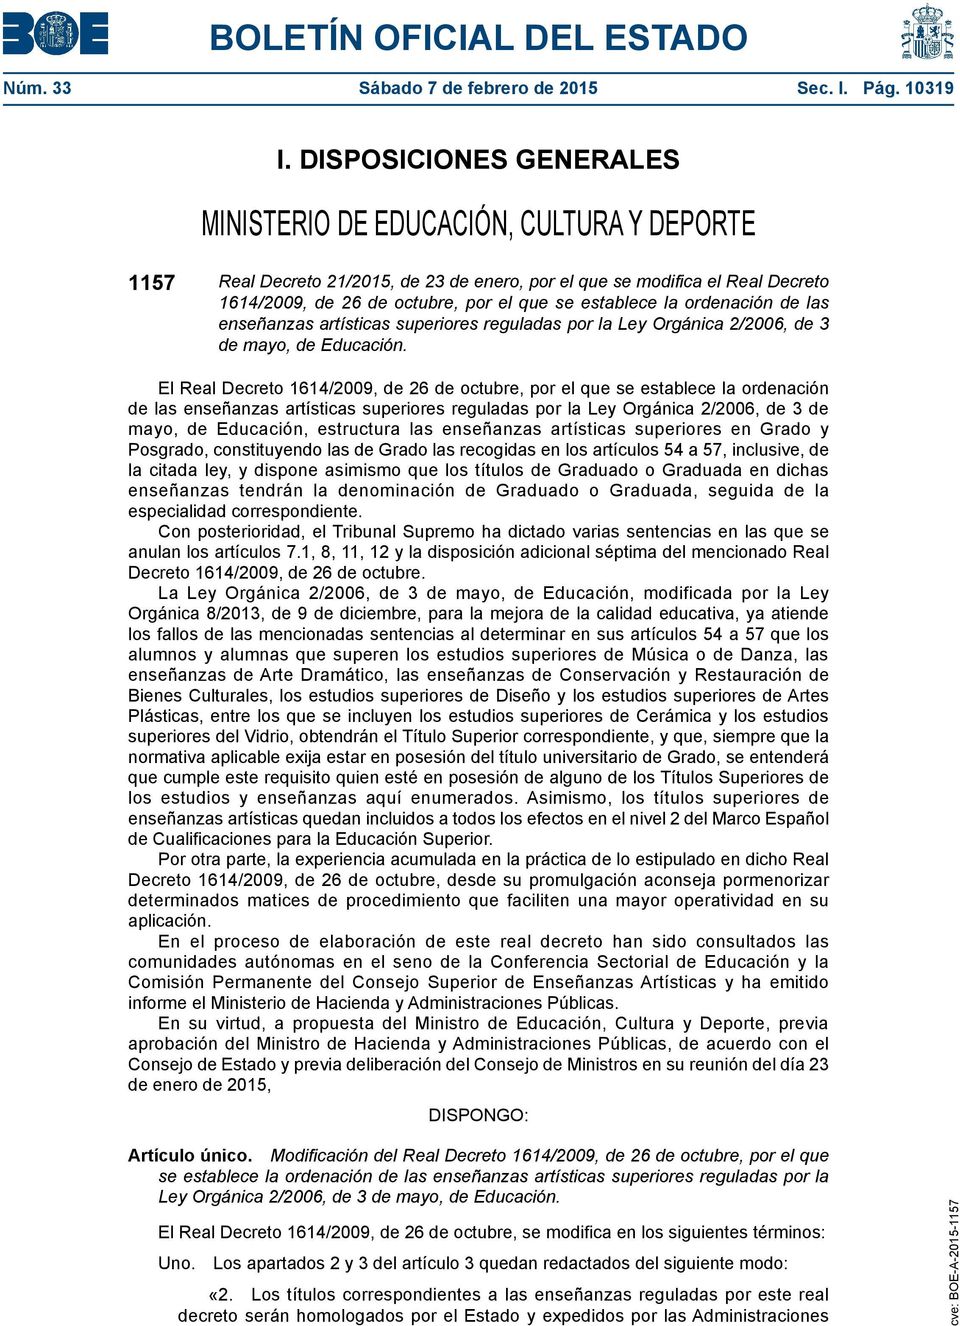 establece la ordenación de las enseñanzas artísticas superiores reguladas por la Ley Orgánica 2/2006, de 3 de mayo, de Educación.